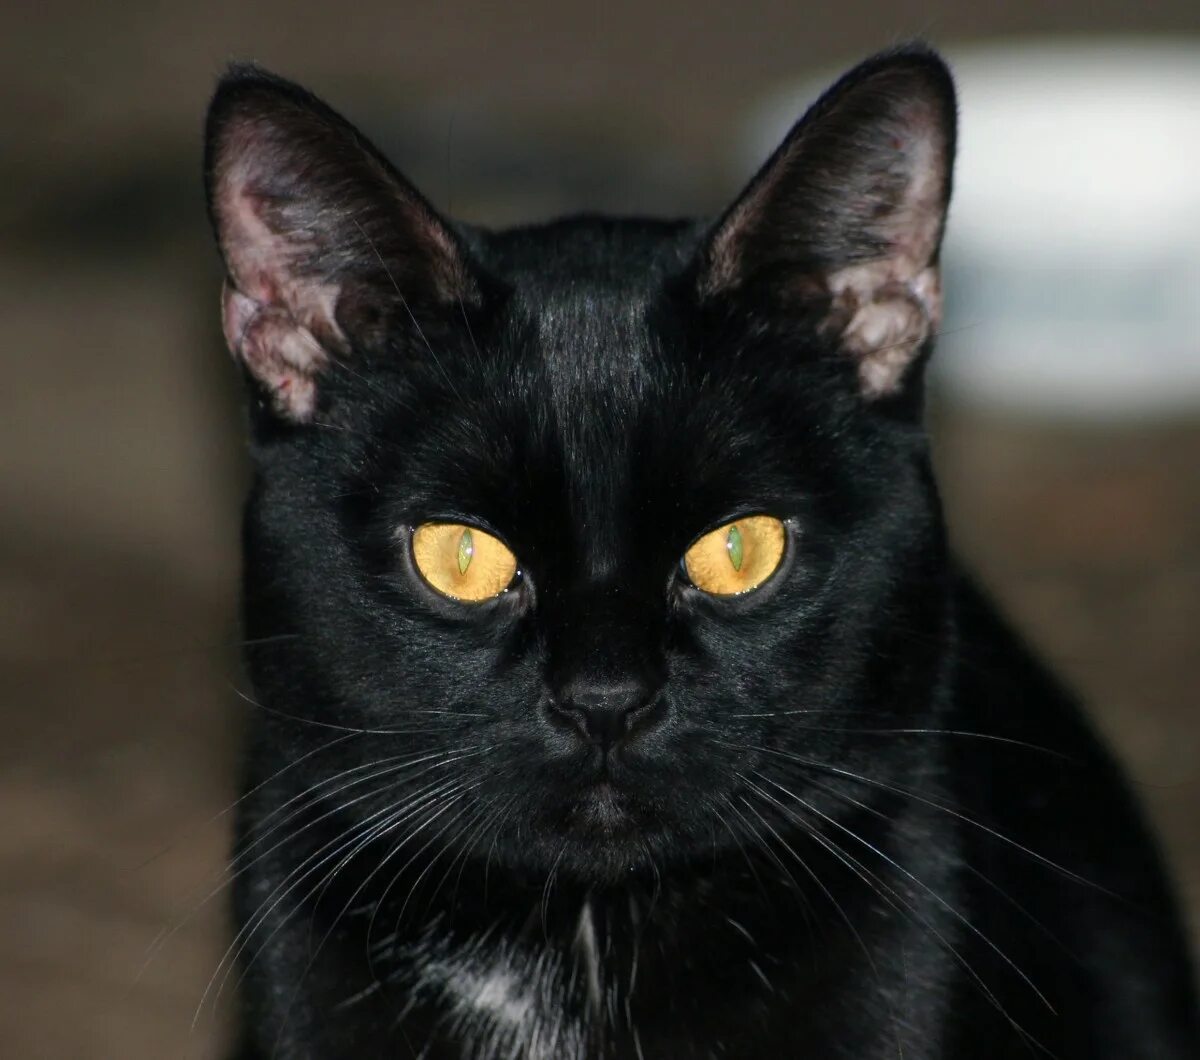 Порода черной кошки с желтыми глазами. Британская Бомбейская кошка. Бомбейская черная кошка. Бомбейская кошка короткошерстная черная. Бомбейская кошка черная с желтыми глазами.